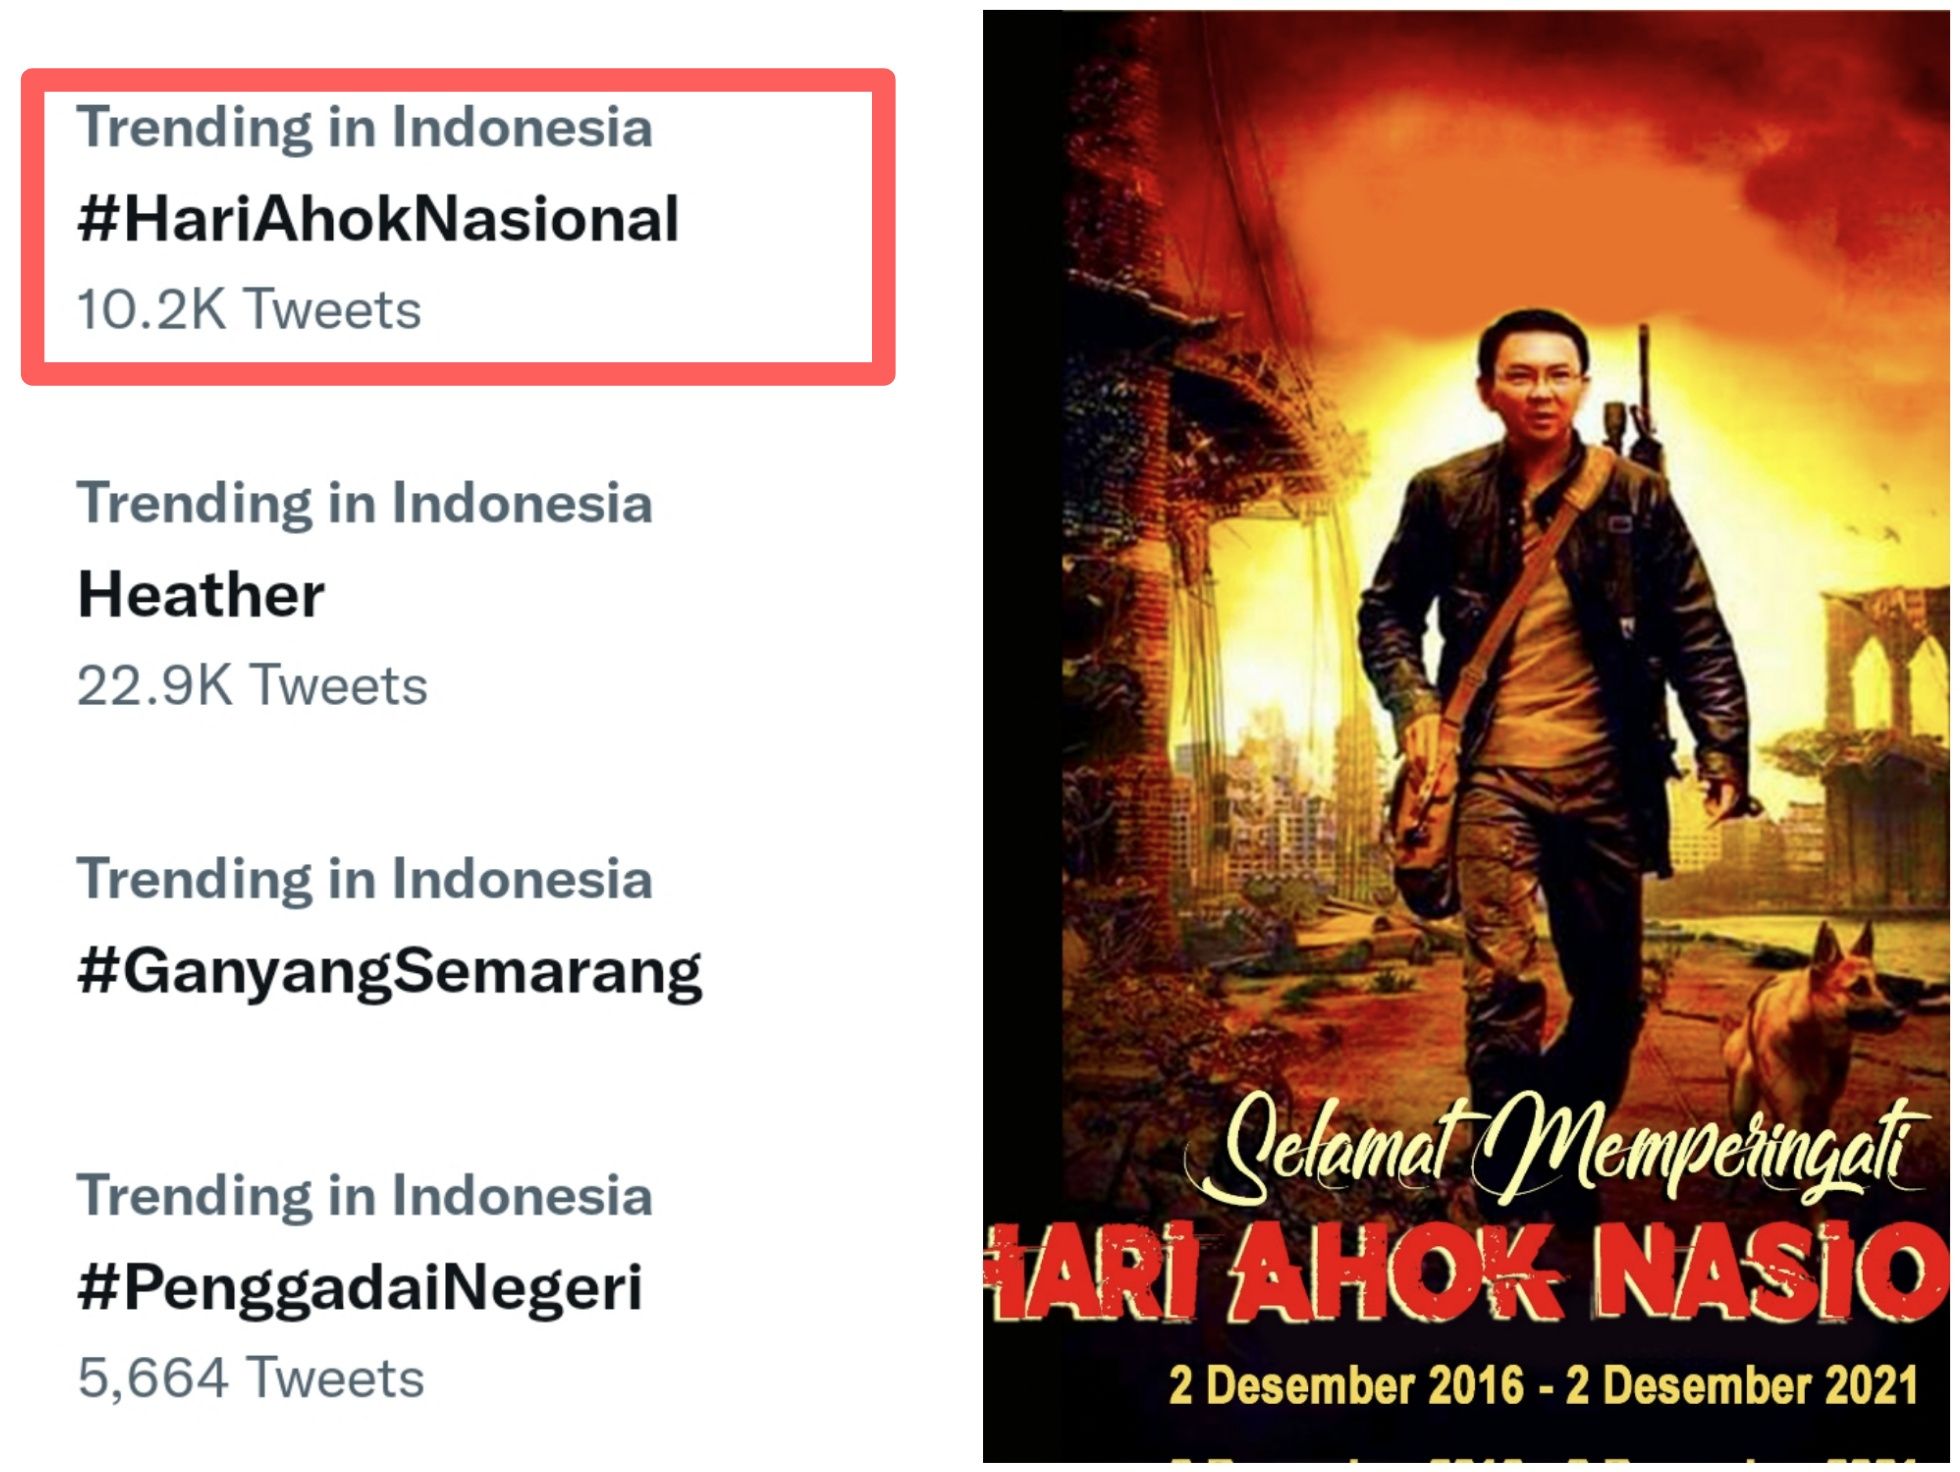 Tagar 'Hari Ahok Nasional' Menggema di Twitter, Sejumlah Warganet Santer Singgung Reuni 212